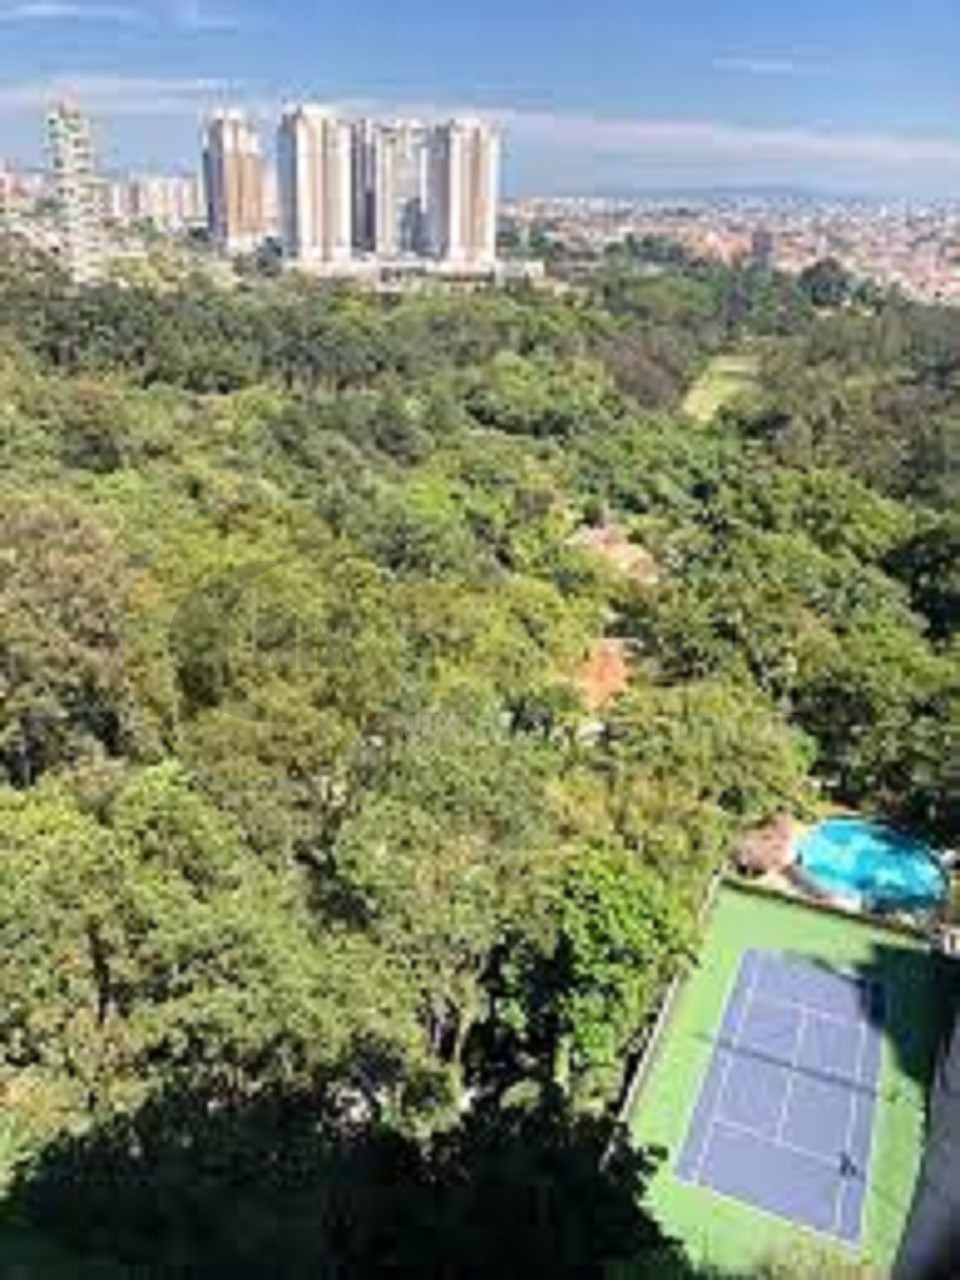 Venda apartamento Butanta USP Metro Sao Paulo Barato perto São Francisco 2 quartos, 60m². Completo piscina, academia, pista skate, portaria e segurança 24h!